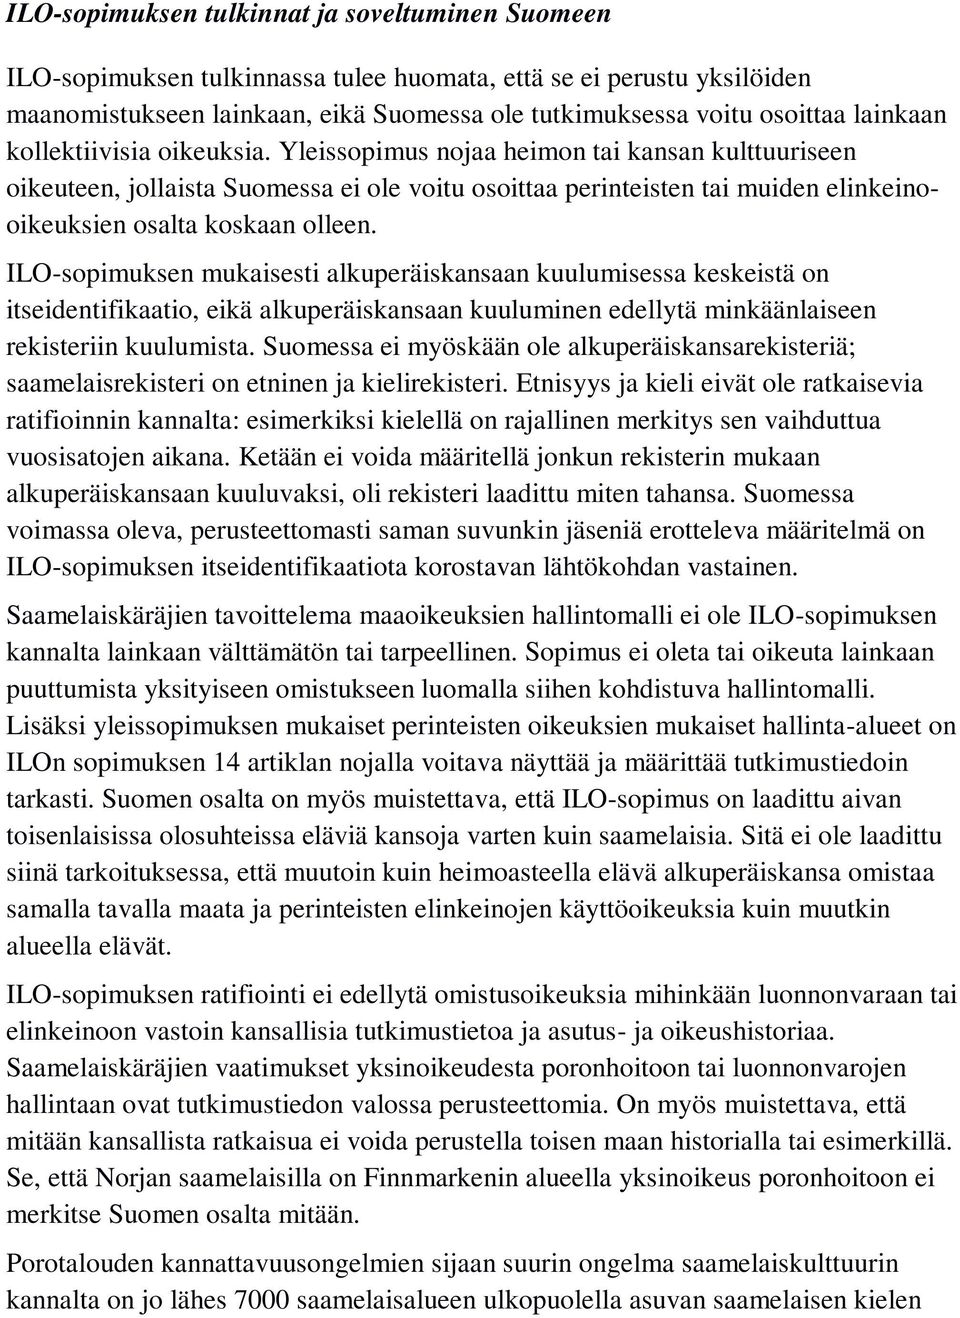 Yleissopimus nojaa heimon tai kansan kulttuuriseen oikeuteen, jollaista Suomessa ei ole voitu osoittaa perinteisten tai muiden elinkeinooikeuksien osalta koskaan olleen.